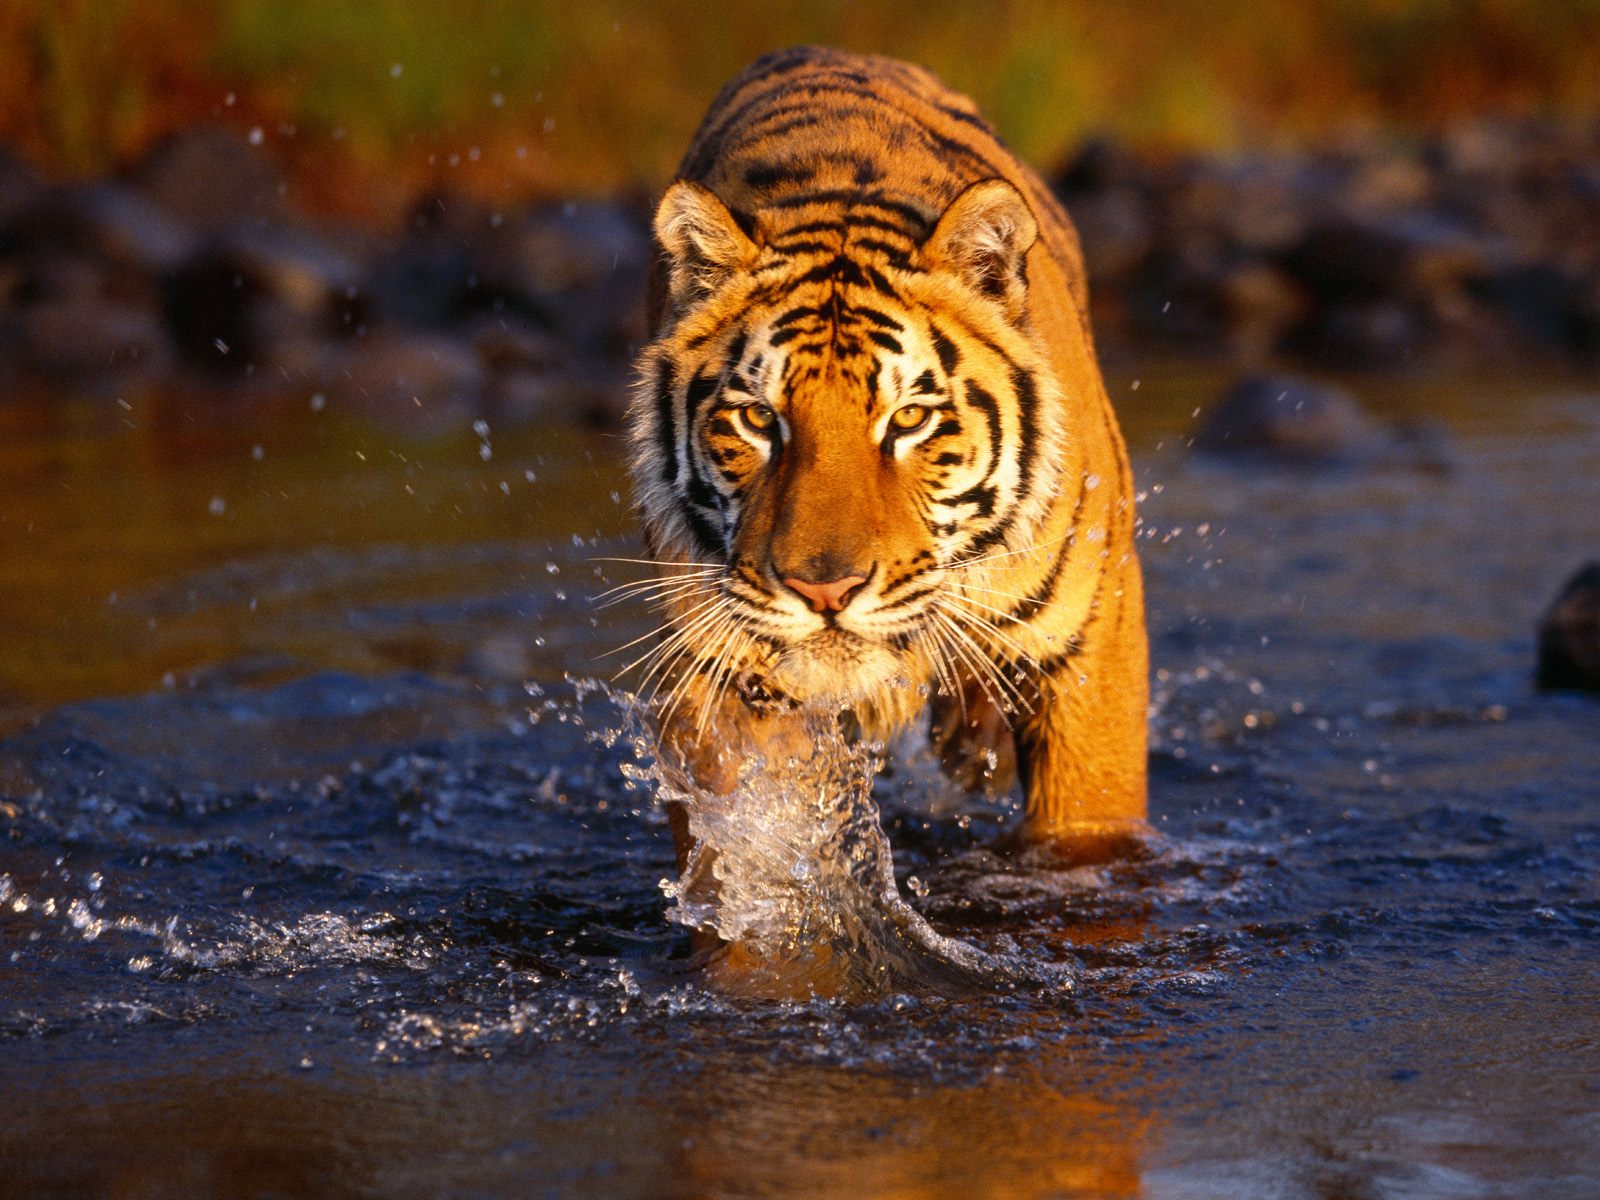 tiger wallpaper hd download free tigers free downloadwallpaper tigers